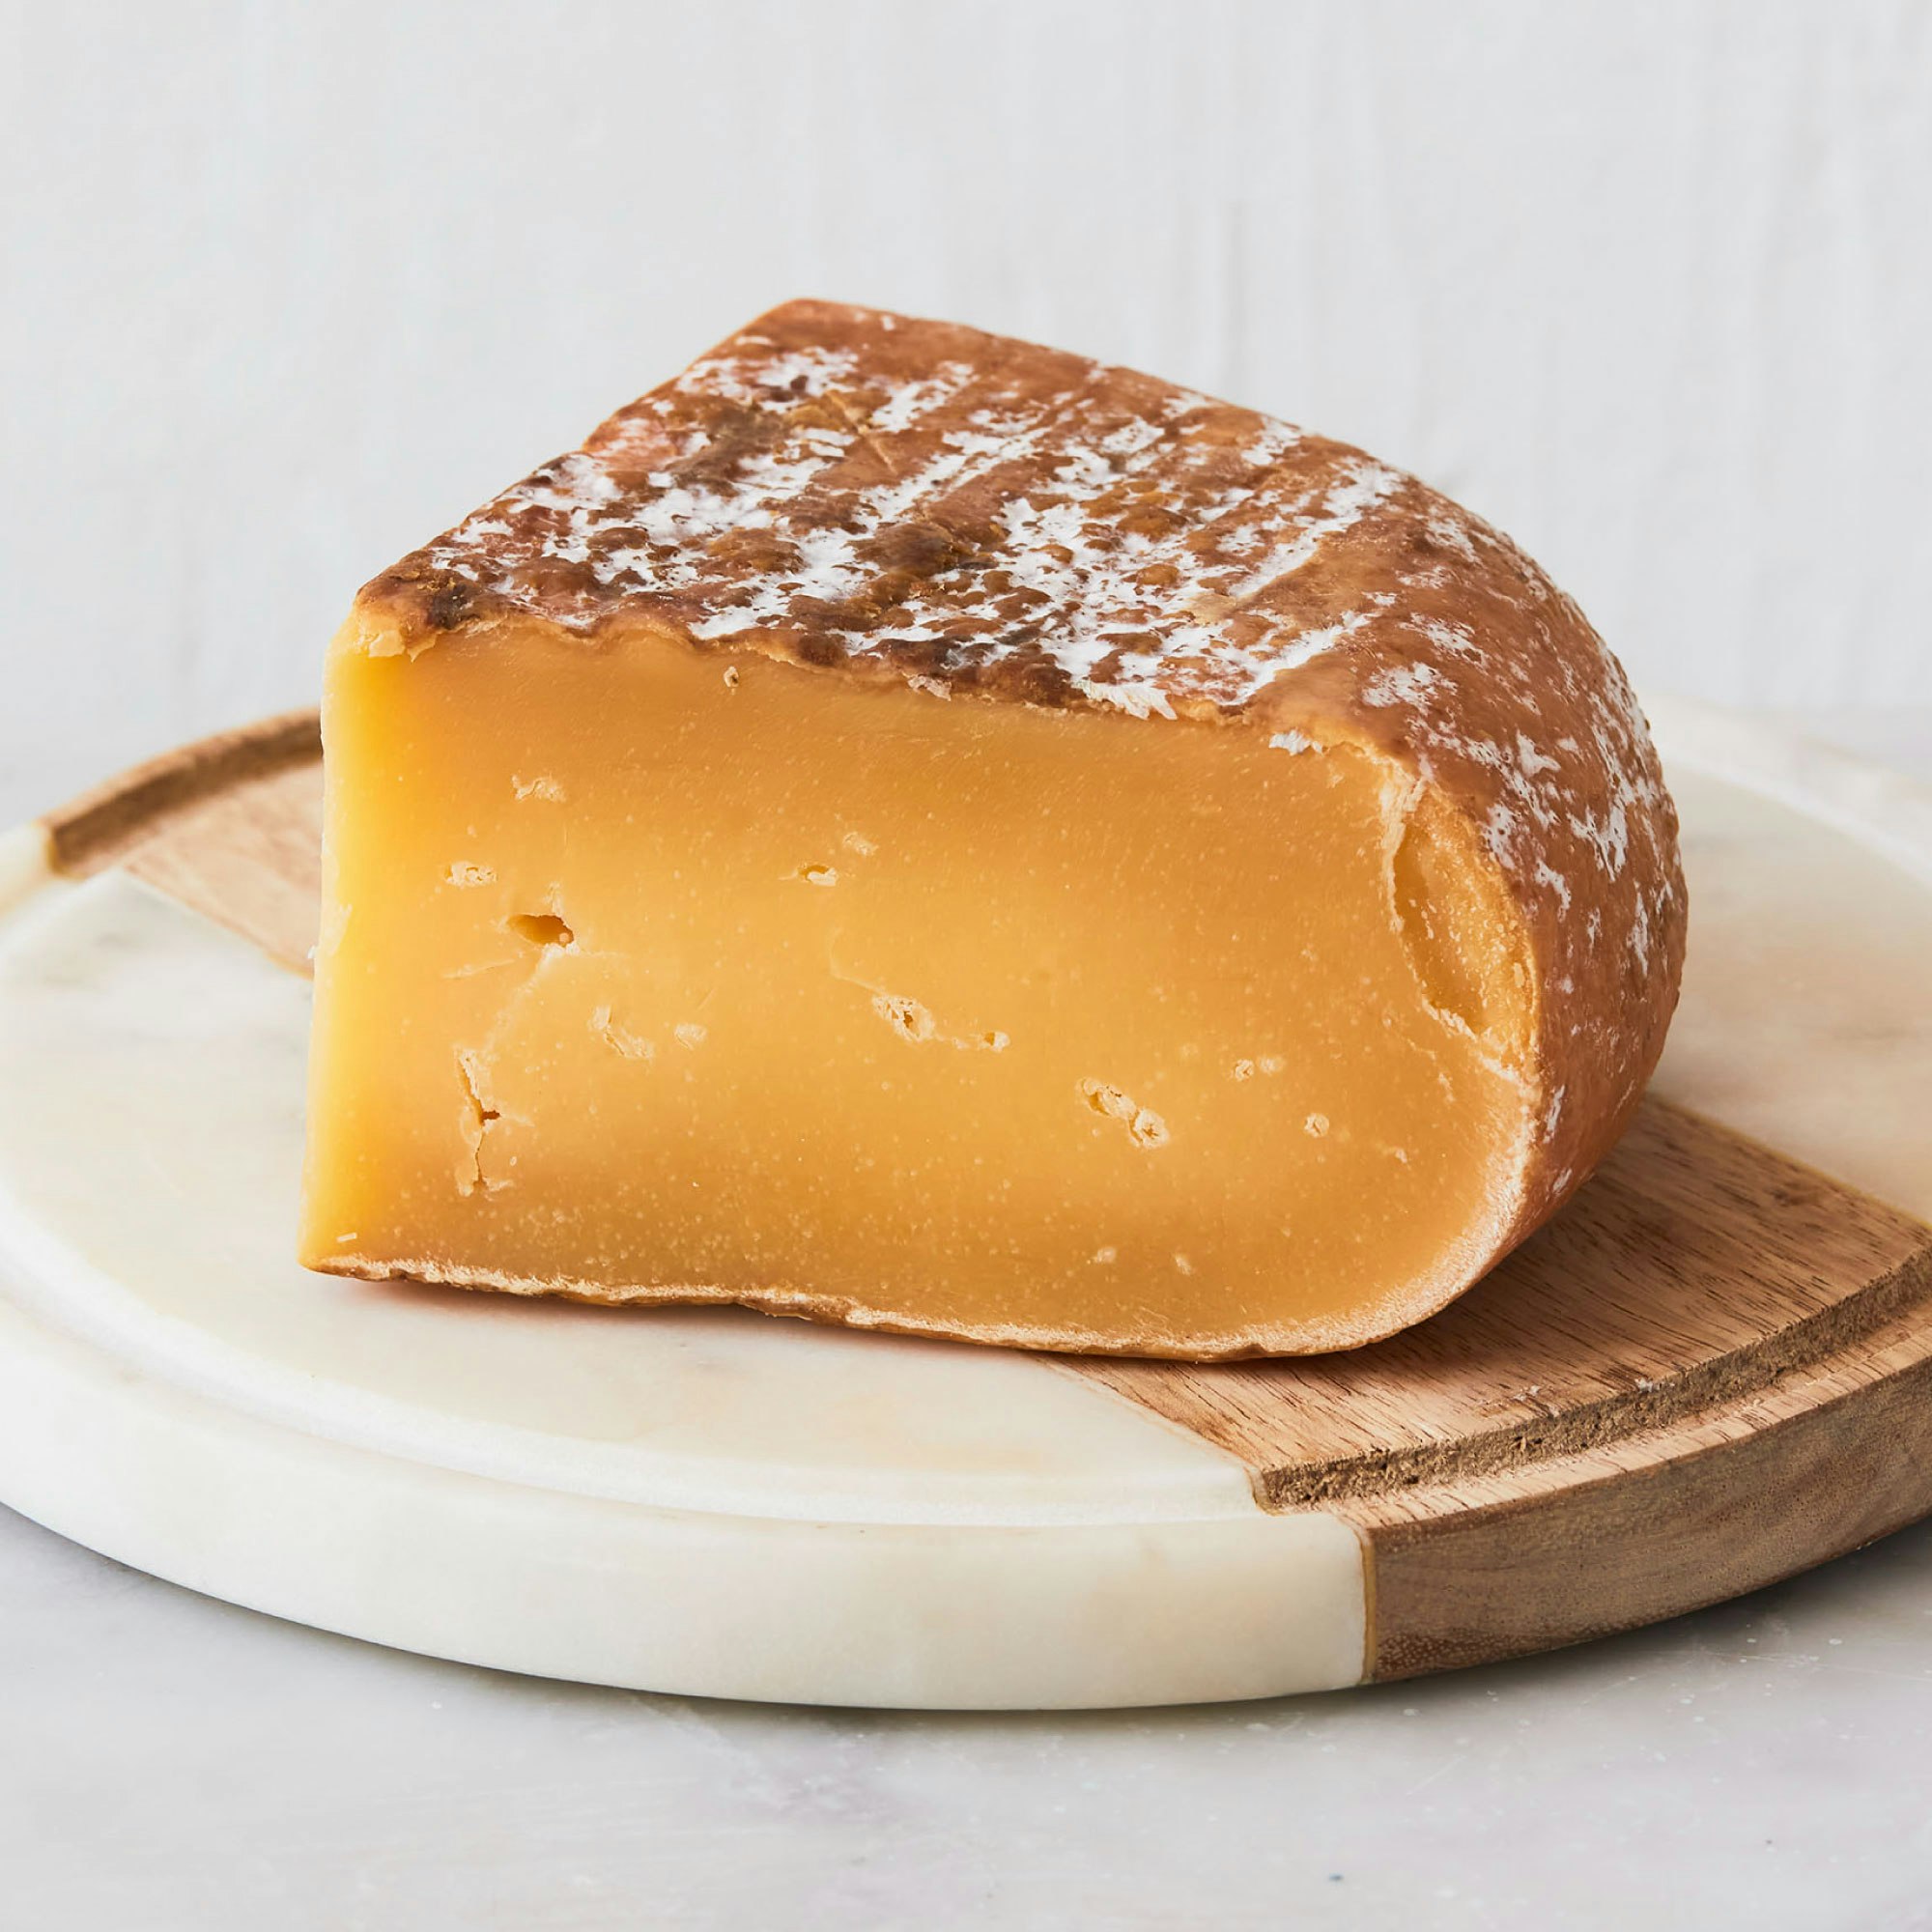 mahon semicurado meloussa cheese